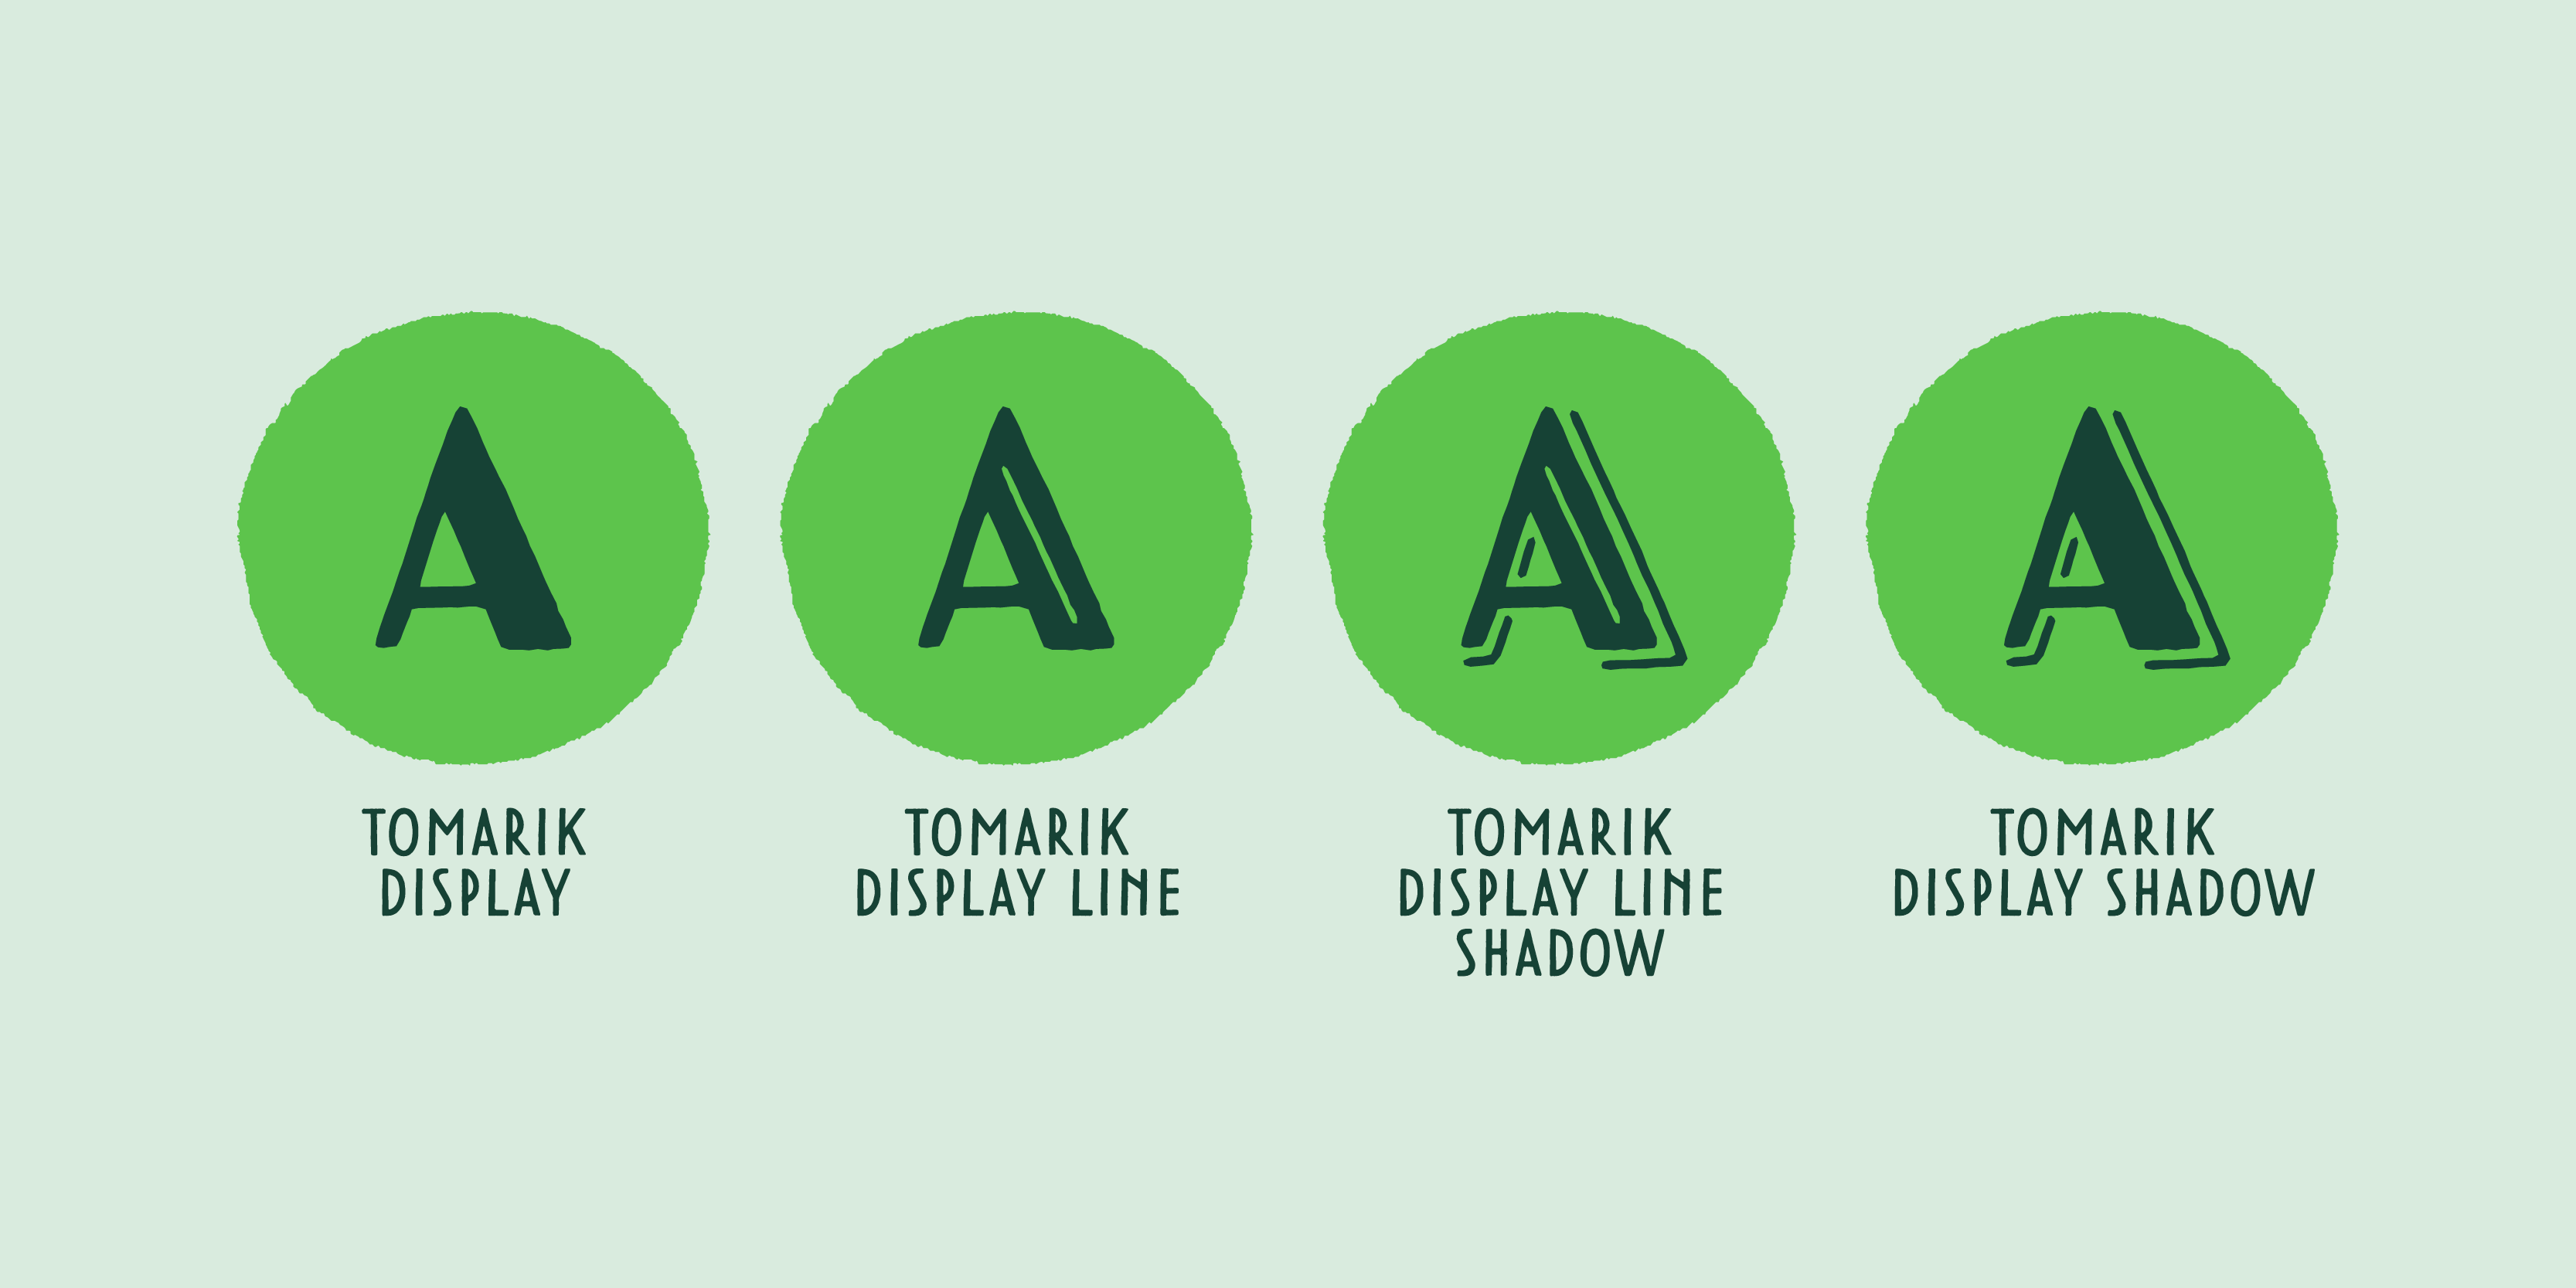 Card displaying Tomarik Display typeface in various styles